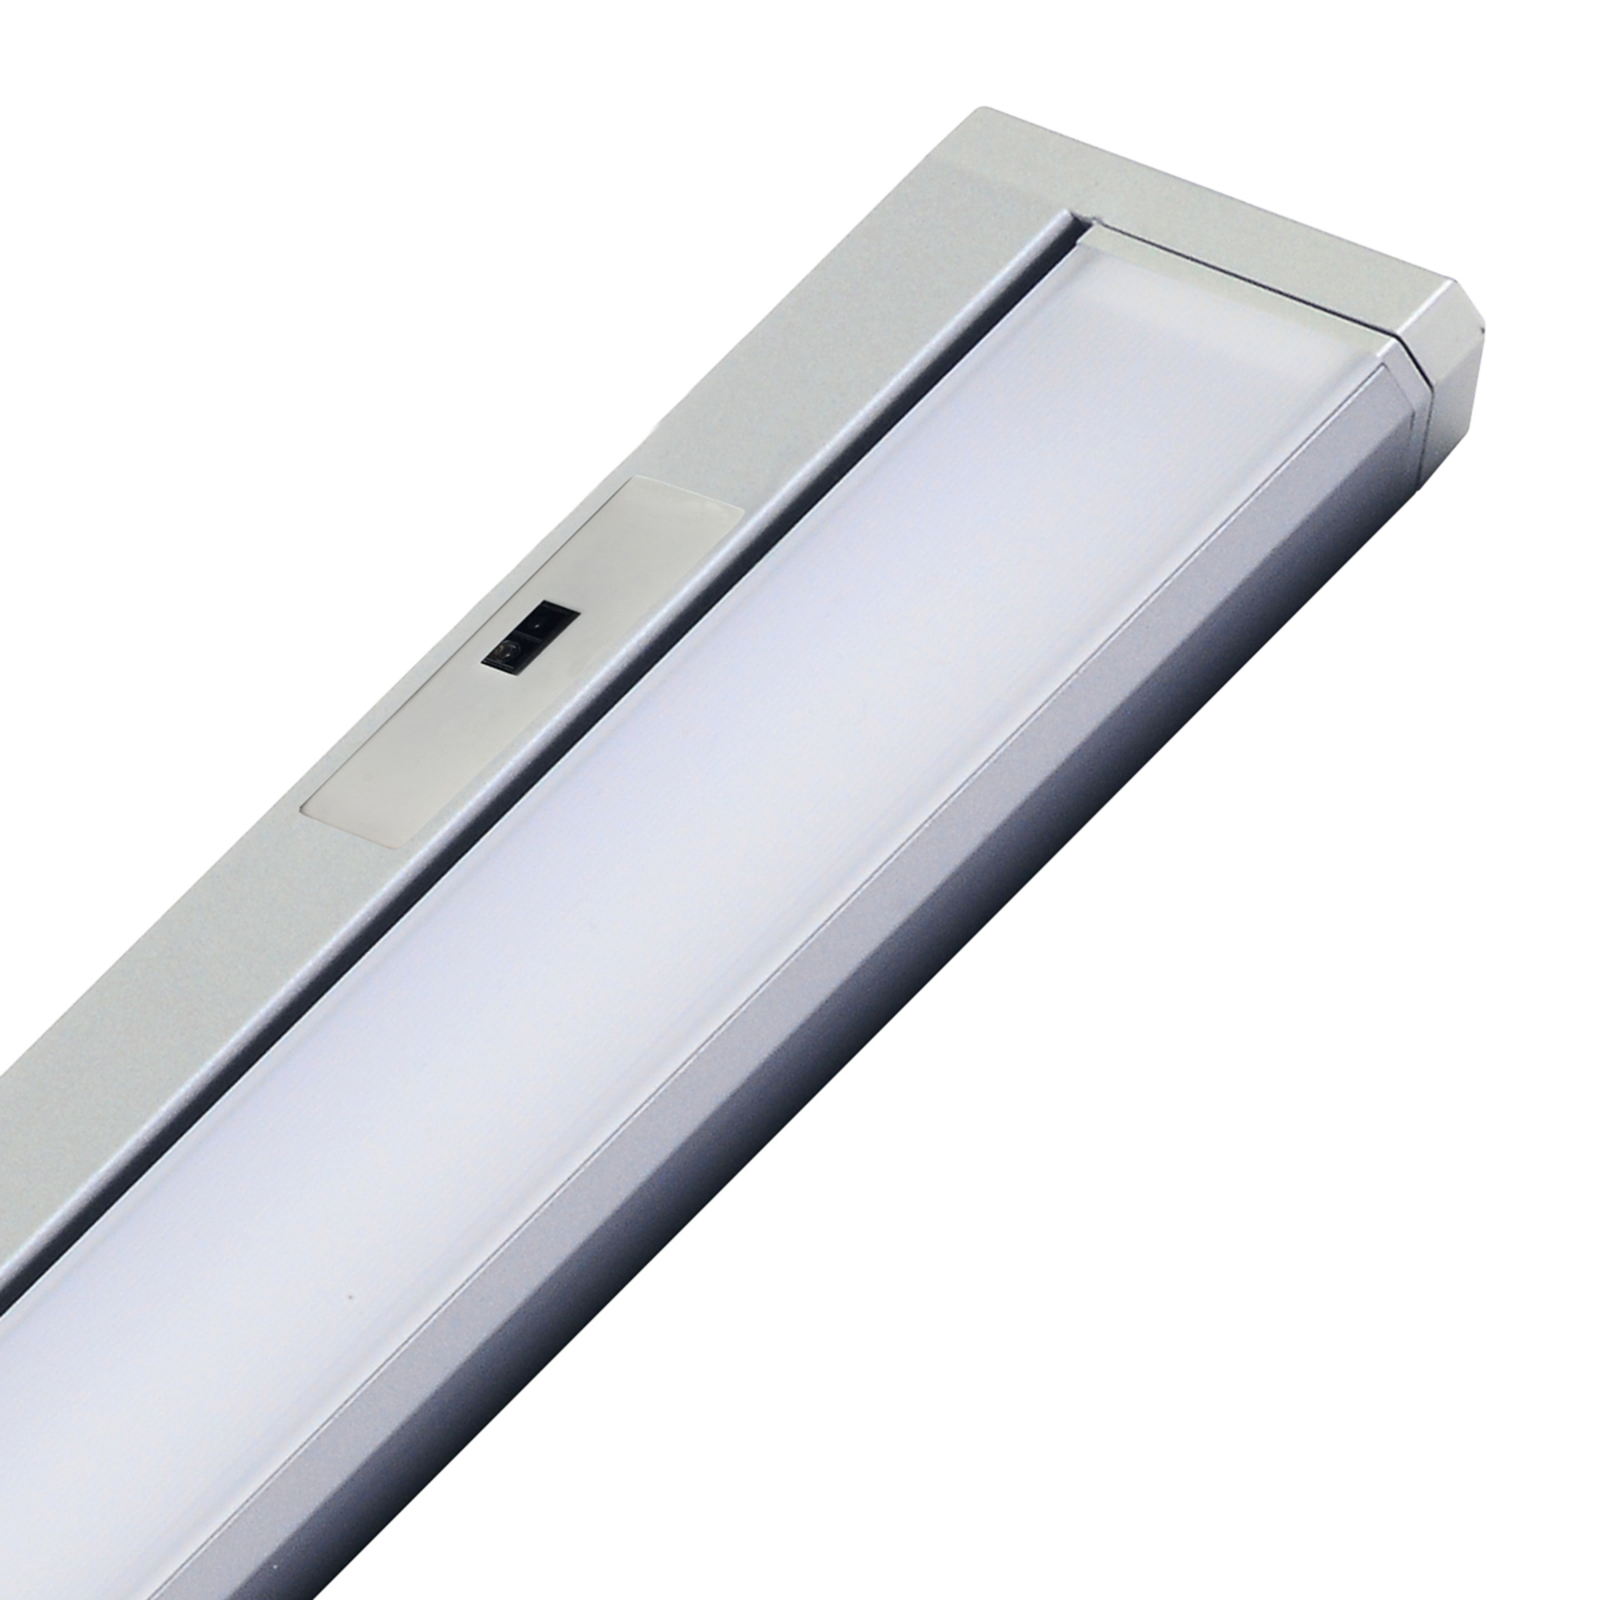 Cabinet Light Swing Sensor in titanium